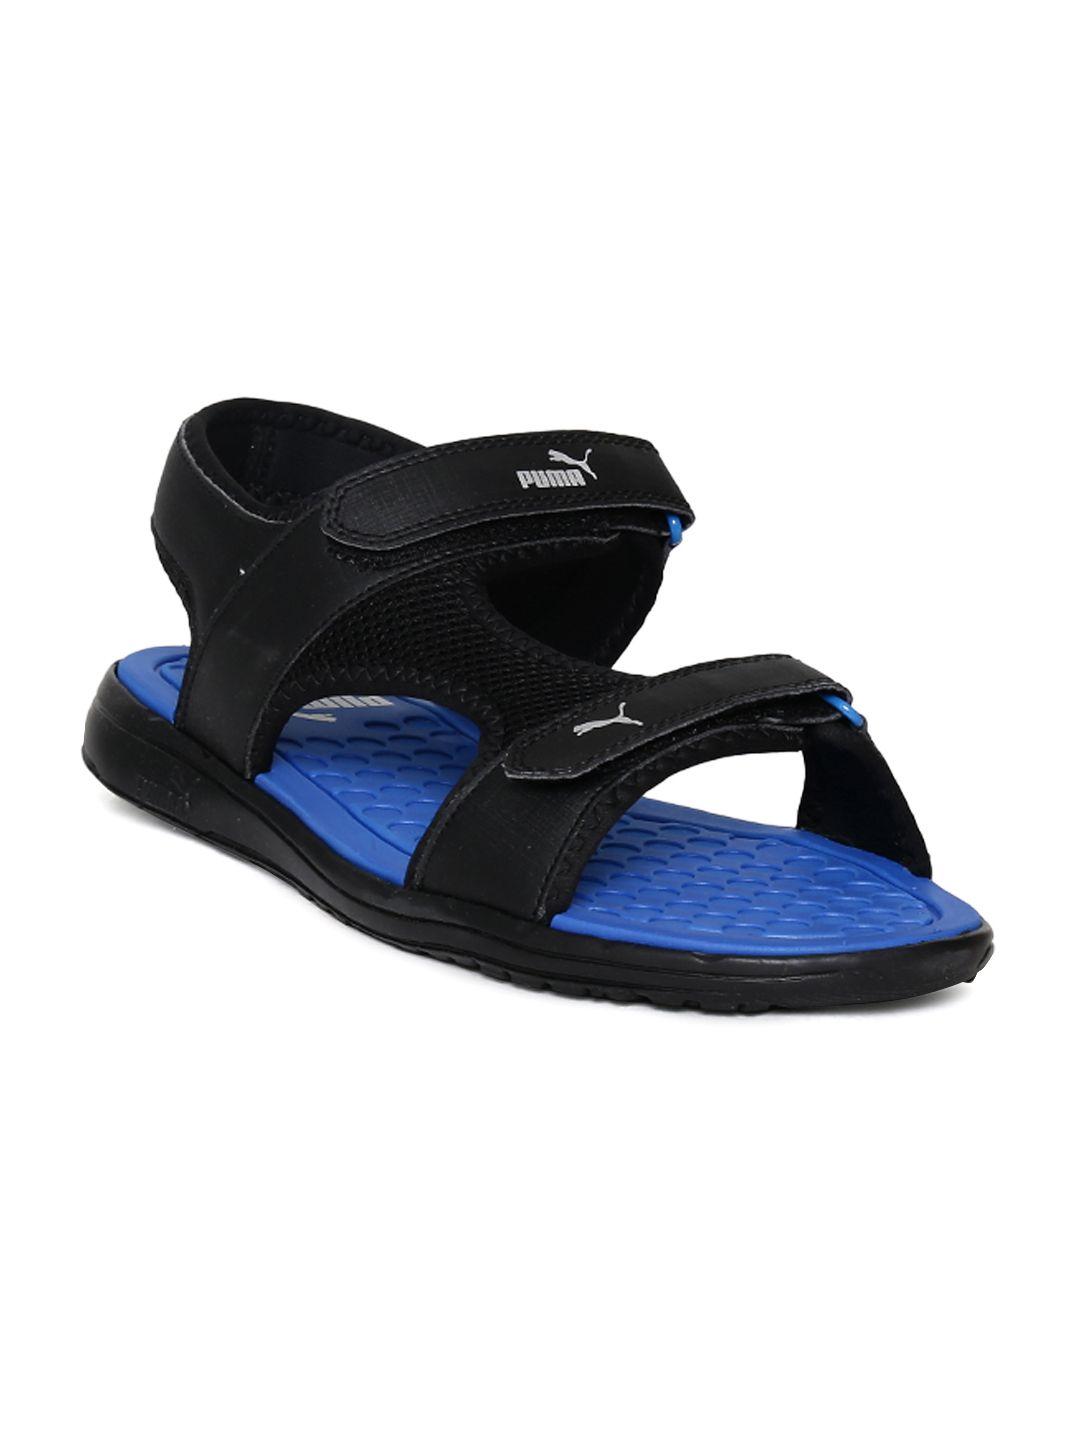 puma-men-black-cydon-dp-sports-sandals